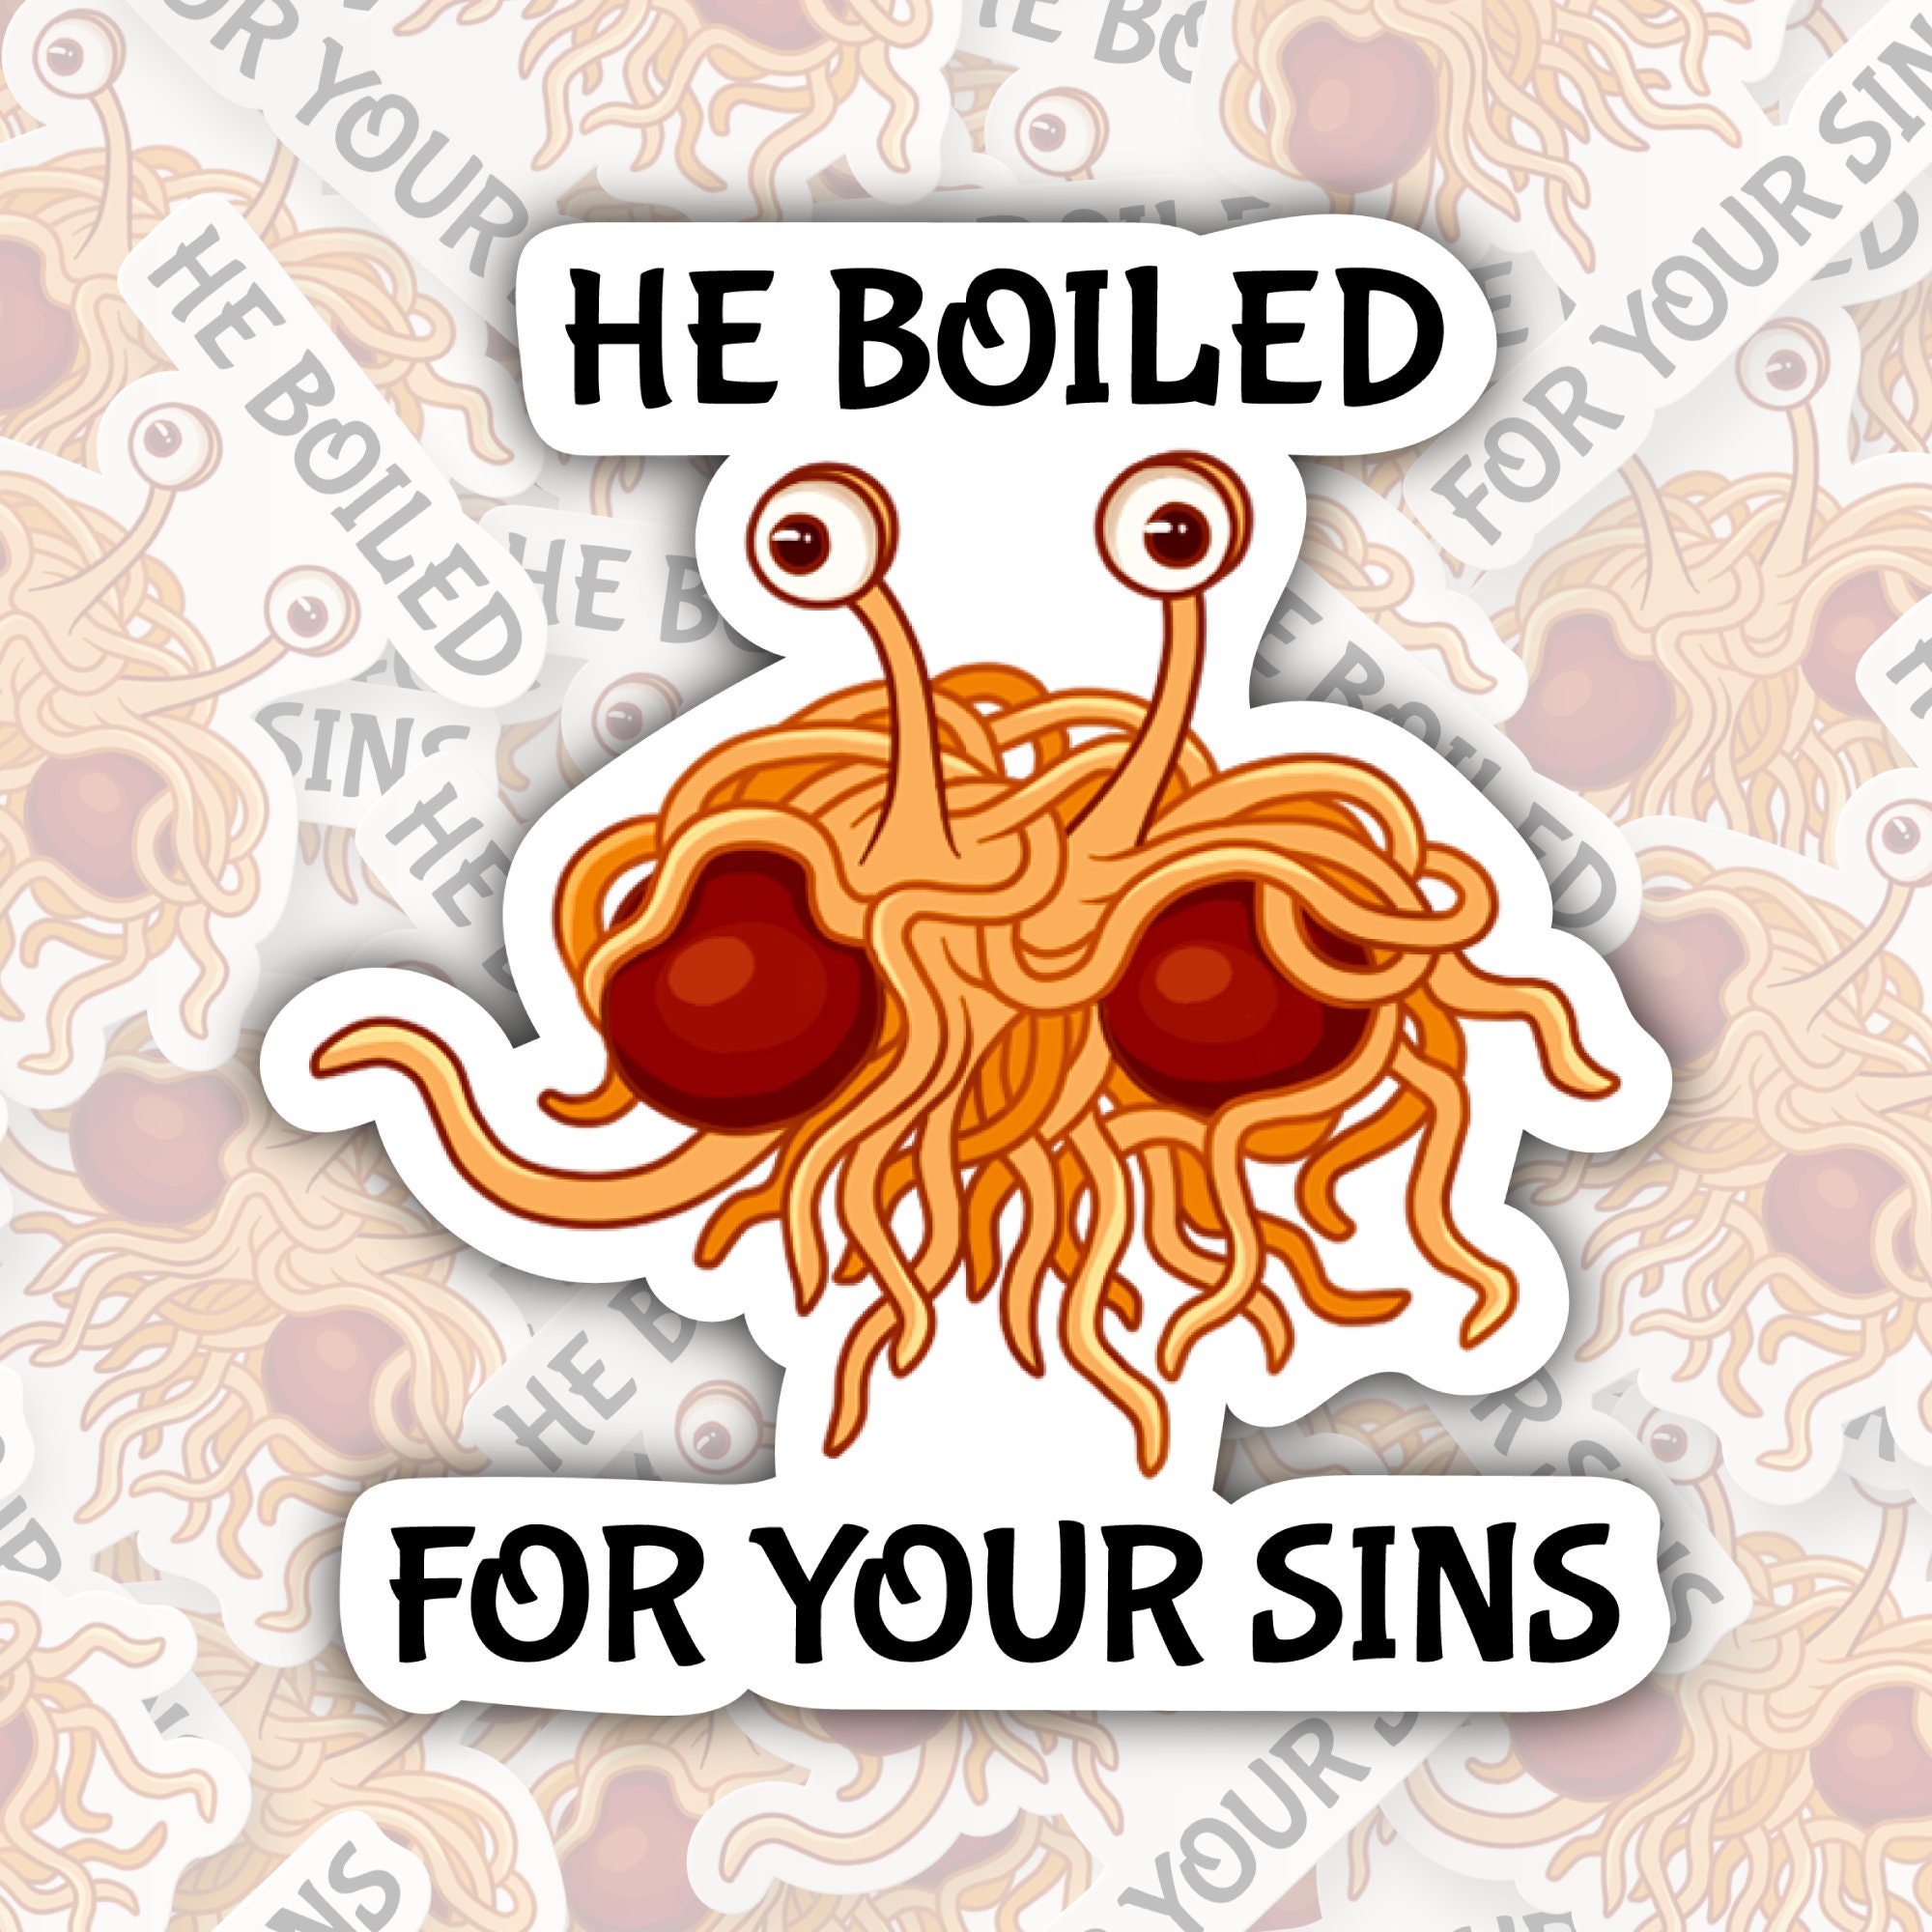 Emuler Medarbejder Følsom Flying Spaghetti Monster Pastafarian He Boiled for Your - Etsy